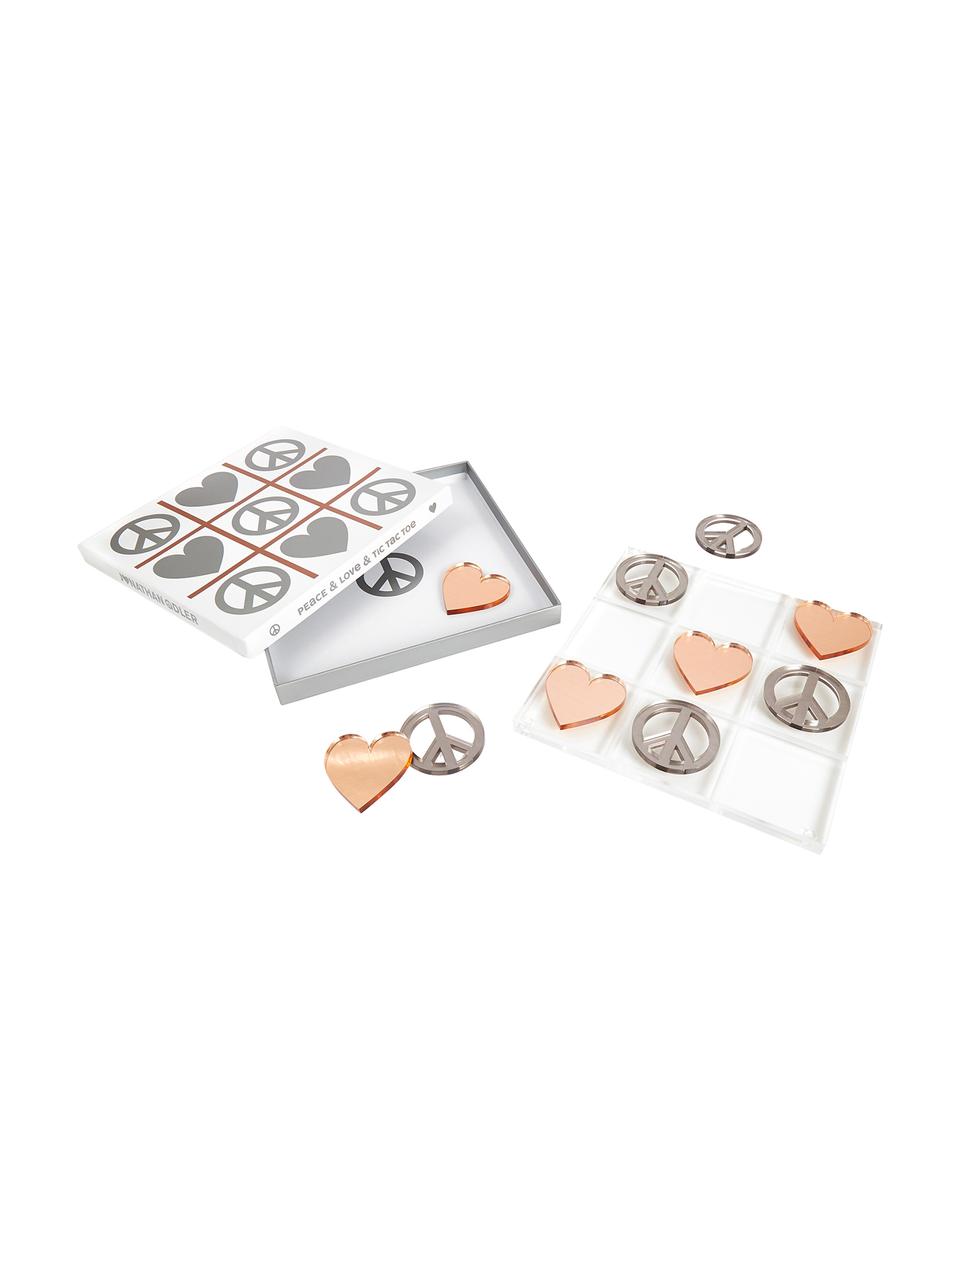 Designer-Brettspiel Love & Peace Tic Tac Toe, 100% Acrylglas, Spielsteine: Silberfarben und Kupferfarben<br>Spielbrett: Transparent, 26 x 26 cm